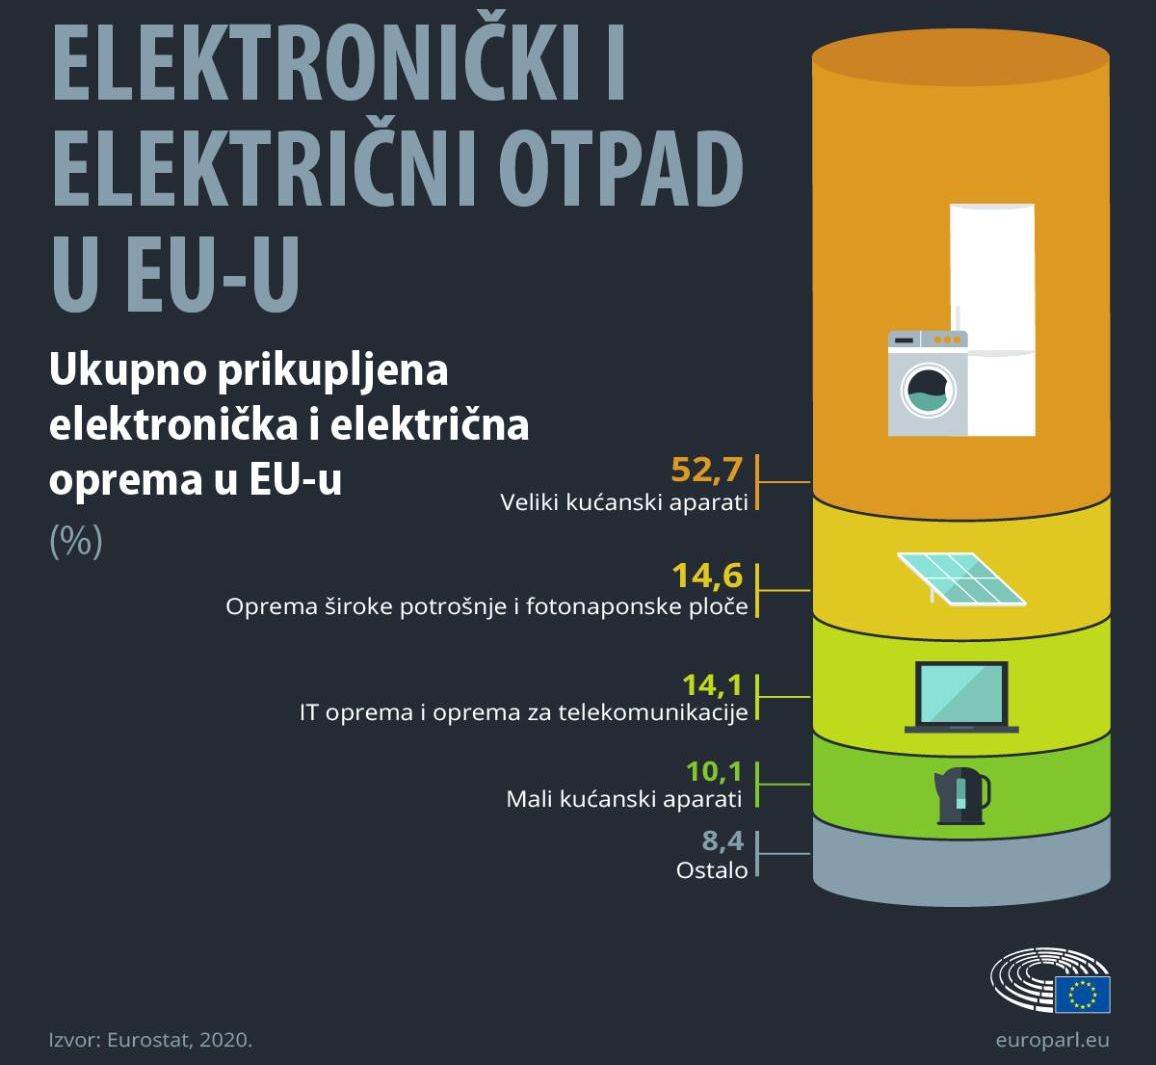  Elektronički i električni otpad u EU.jpg 